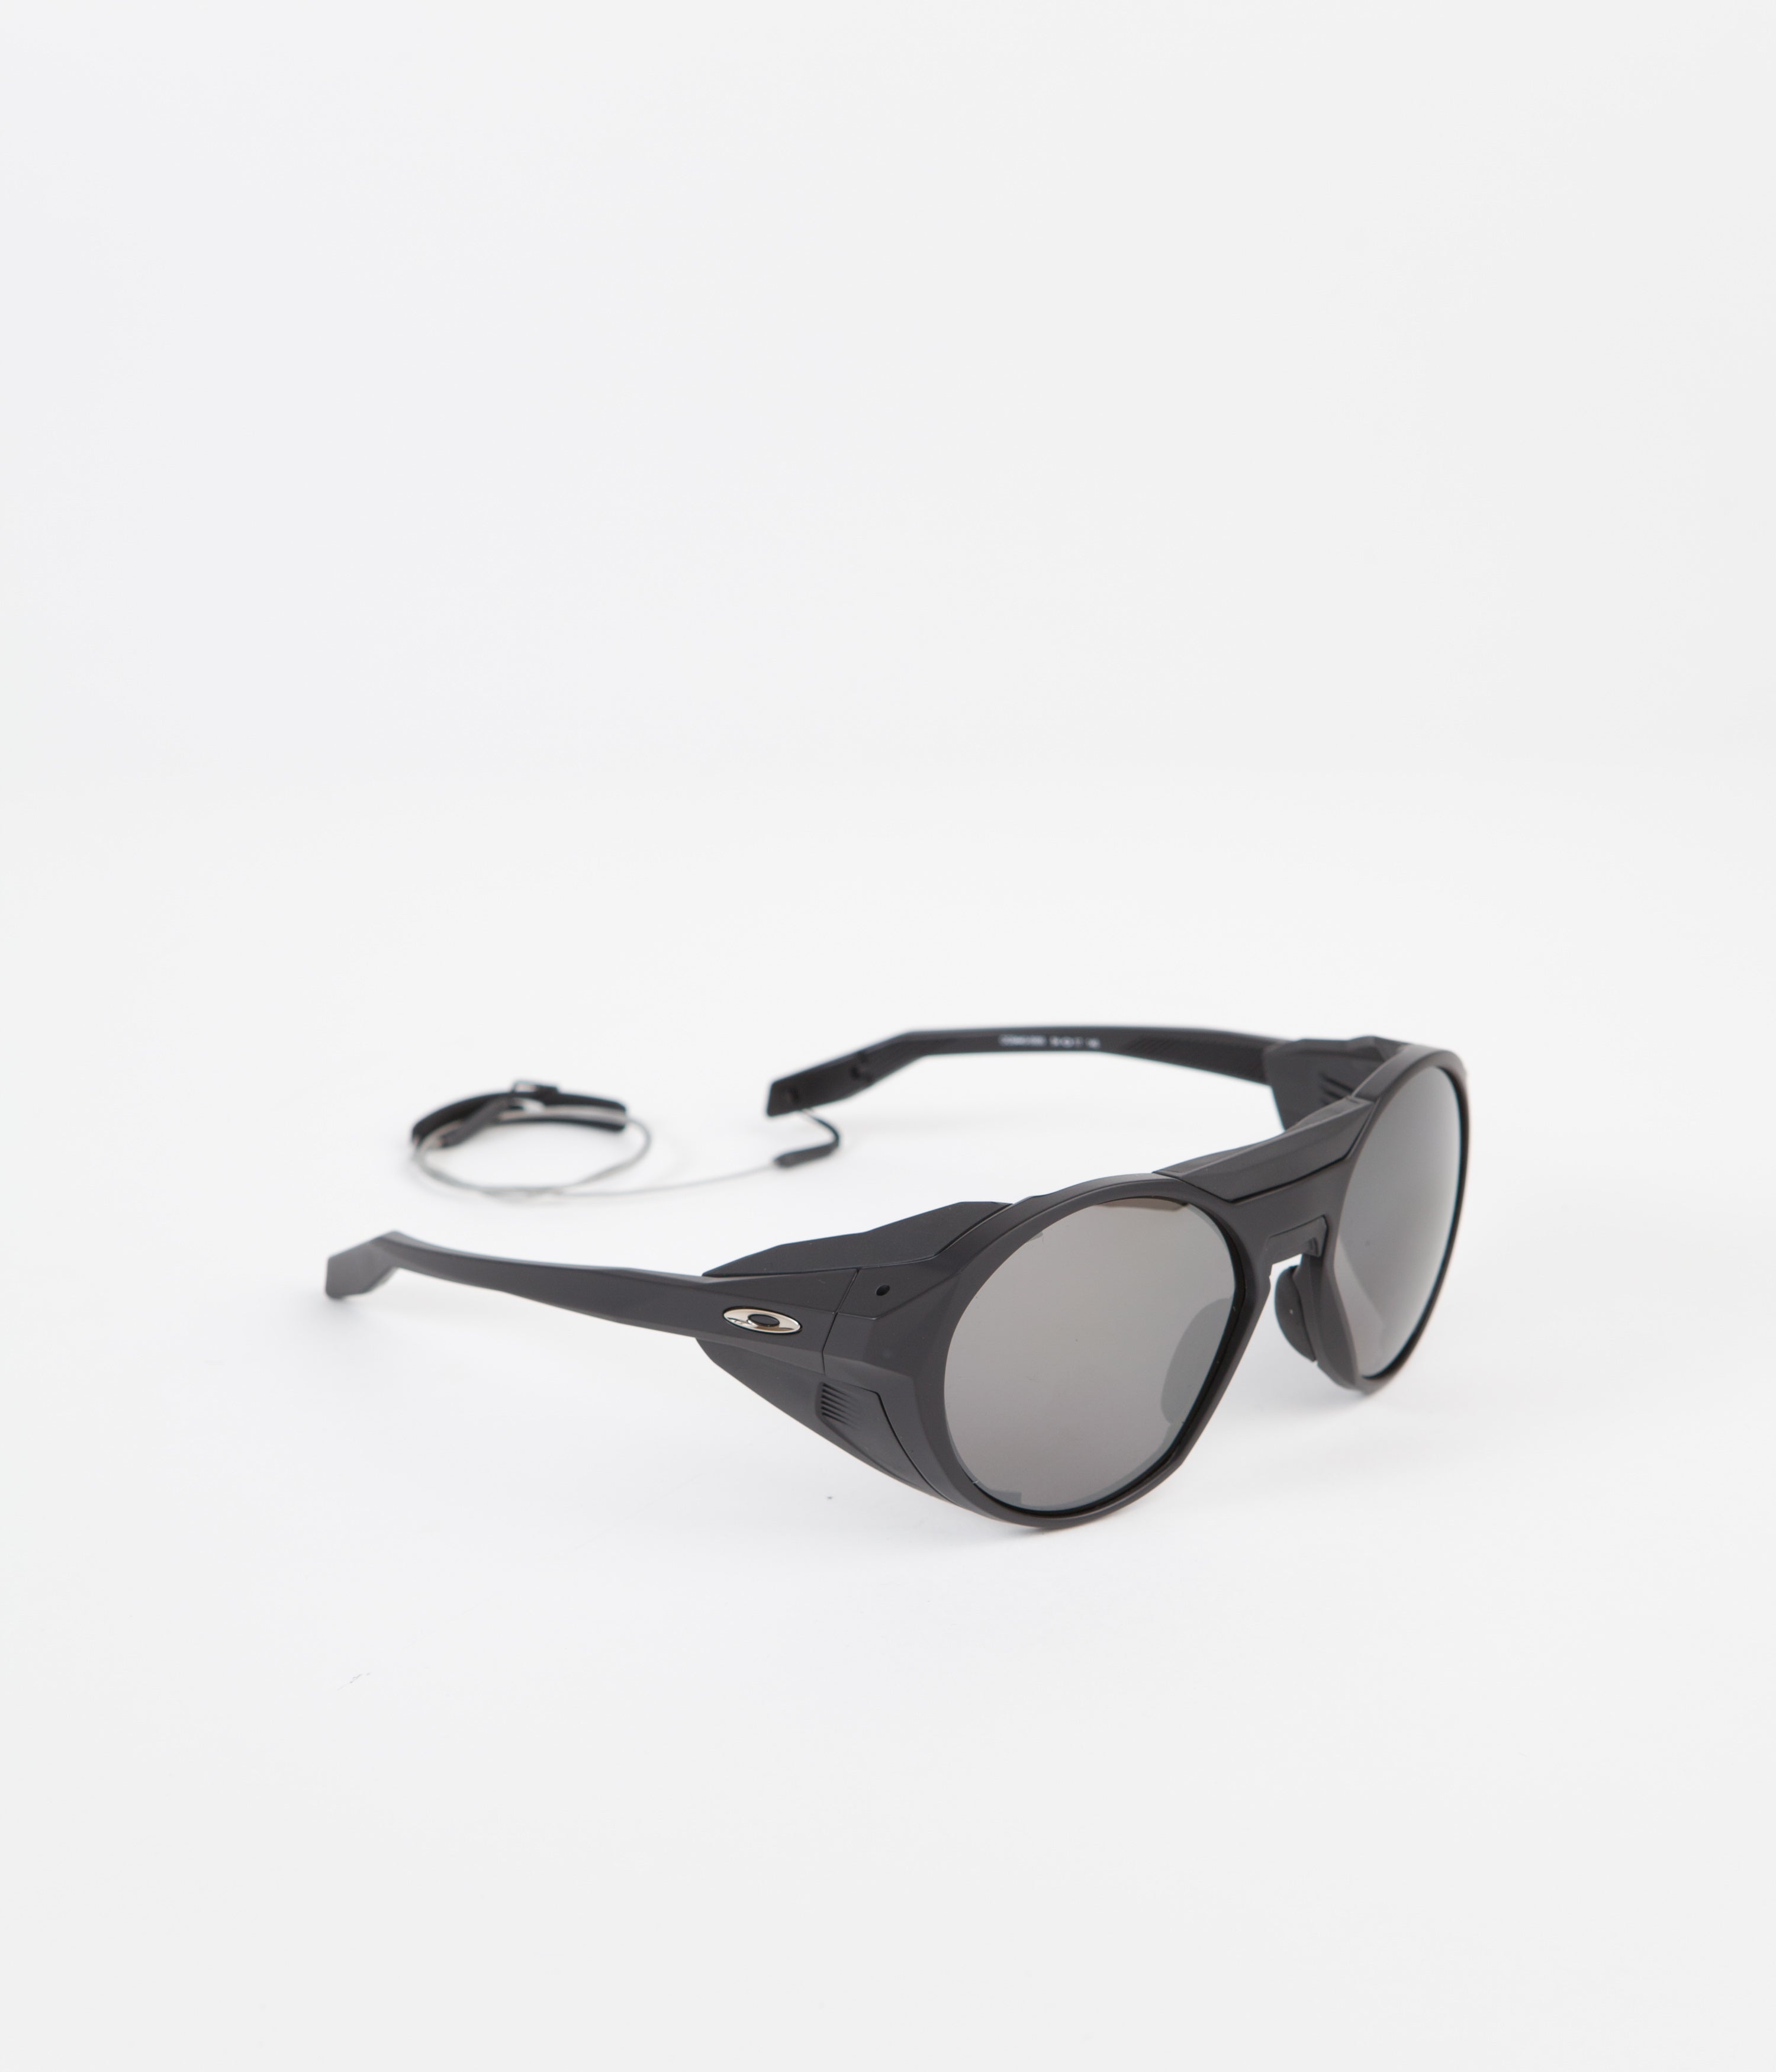 FitforhealthShops | Sunglasses MADISON DG CUP DG 2220 - brown pilot  sunglasses - Oakley Clifden Sunglasses